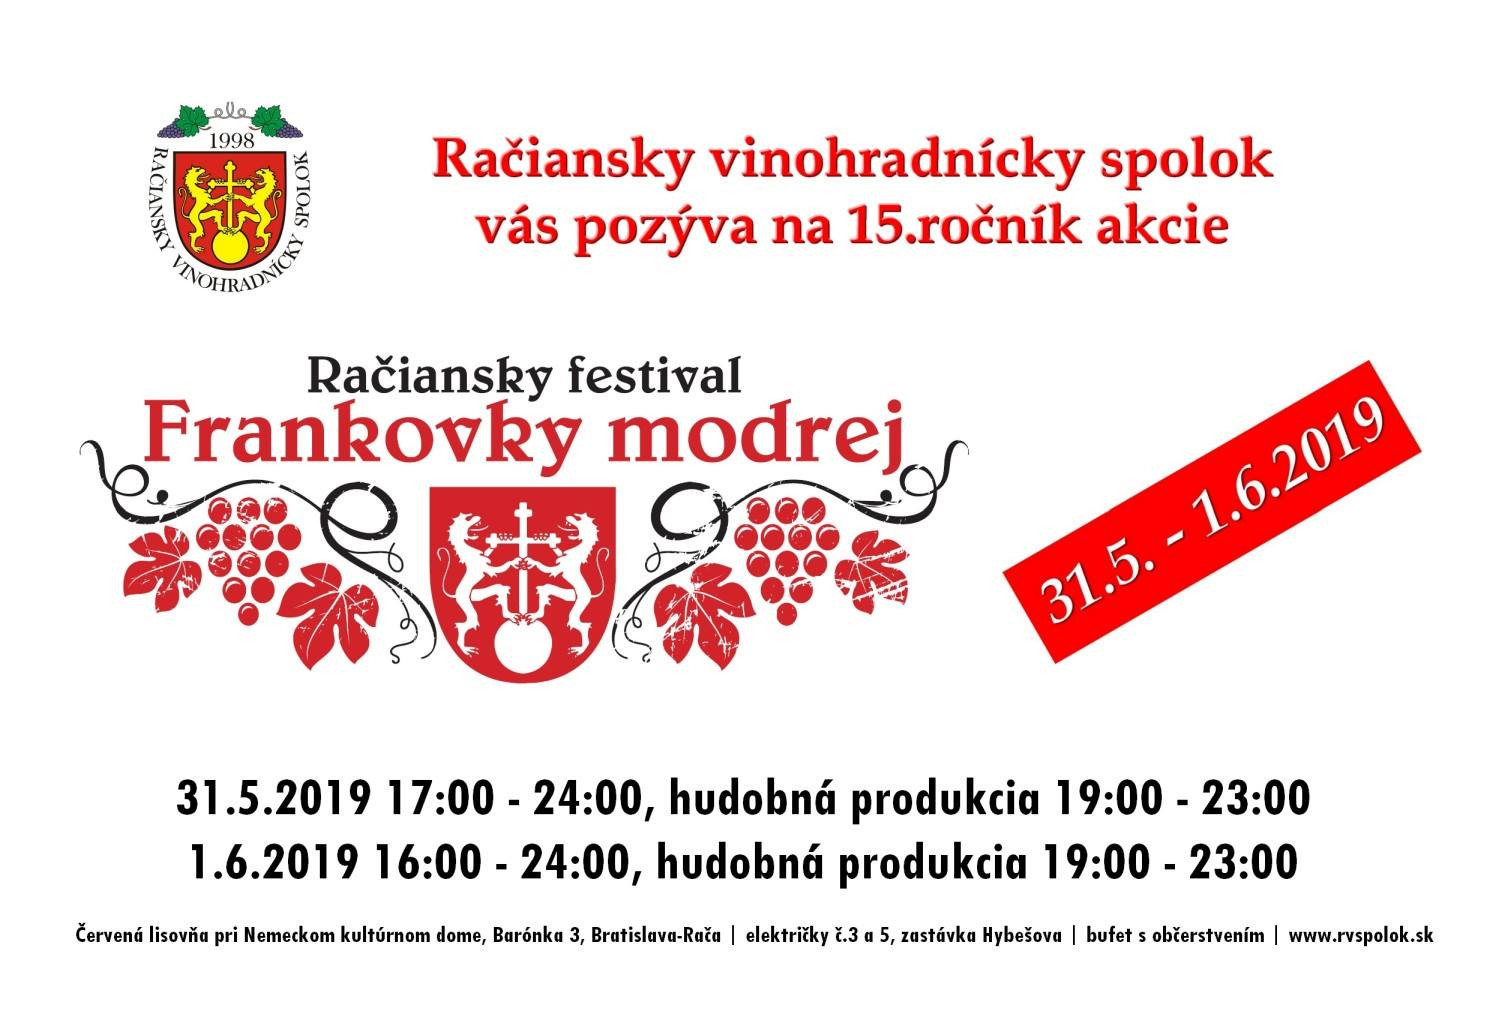 Račiansky festival Frankovky modrej (31.5. - 1.6.2019)